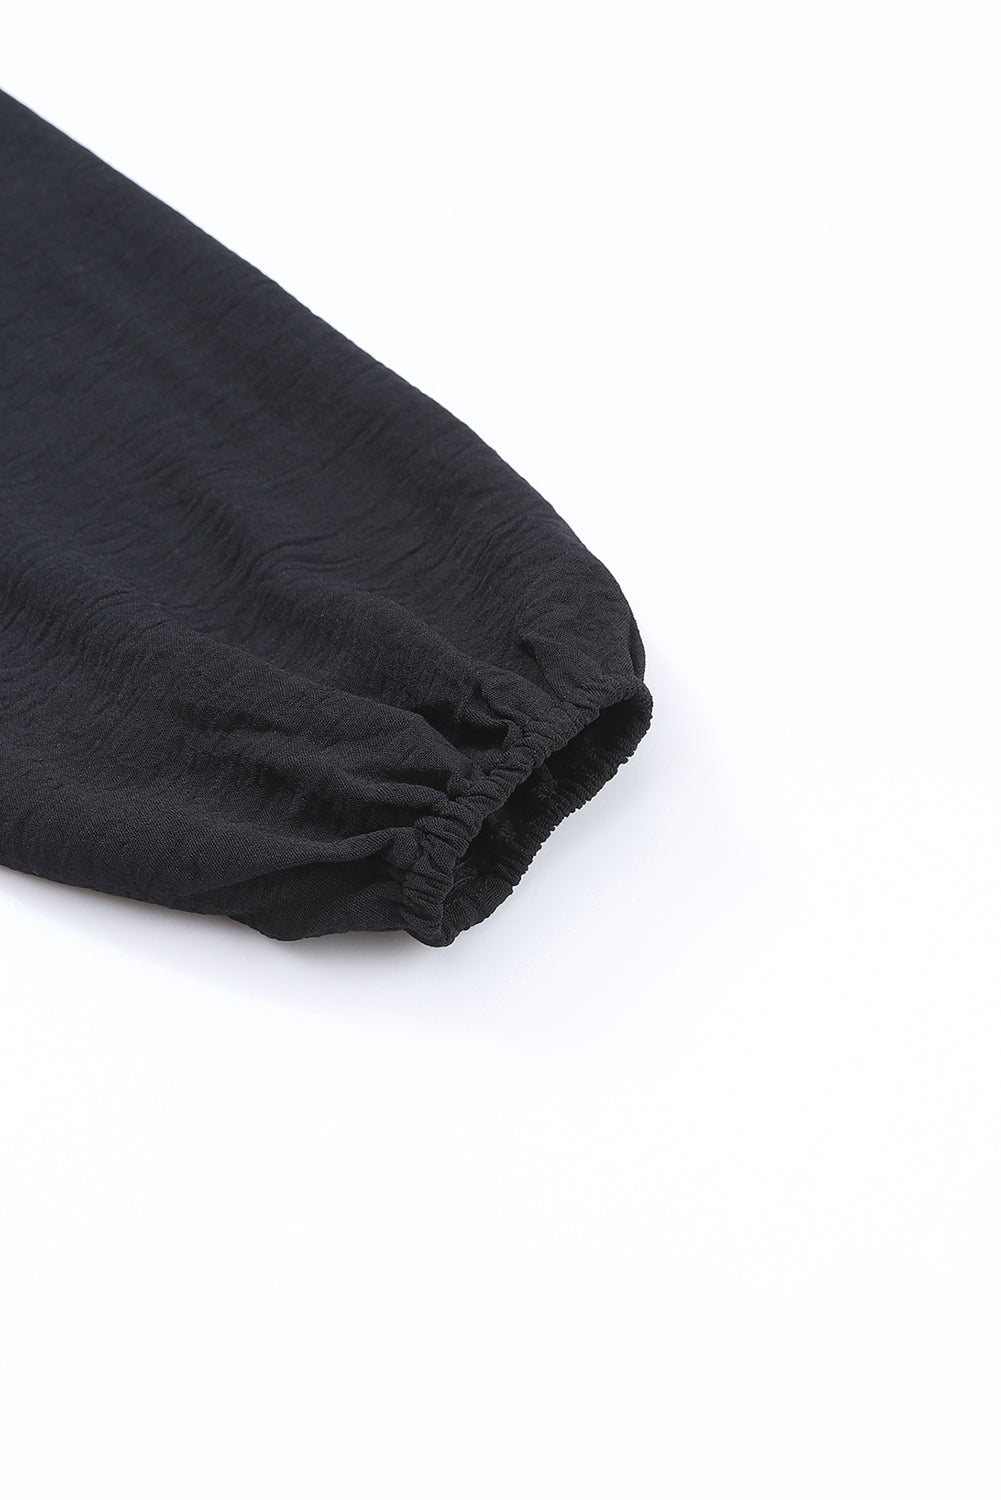 Črn kombinezon s širokimi rokavi in ​​dolgimi rokavi s kvadratnim izrezom